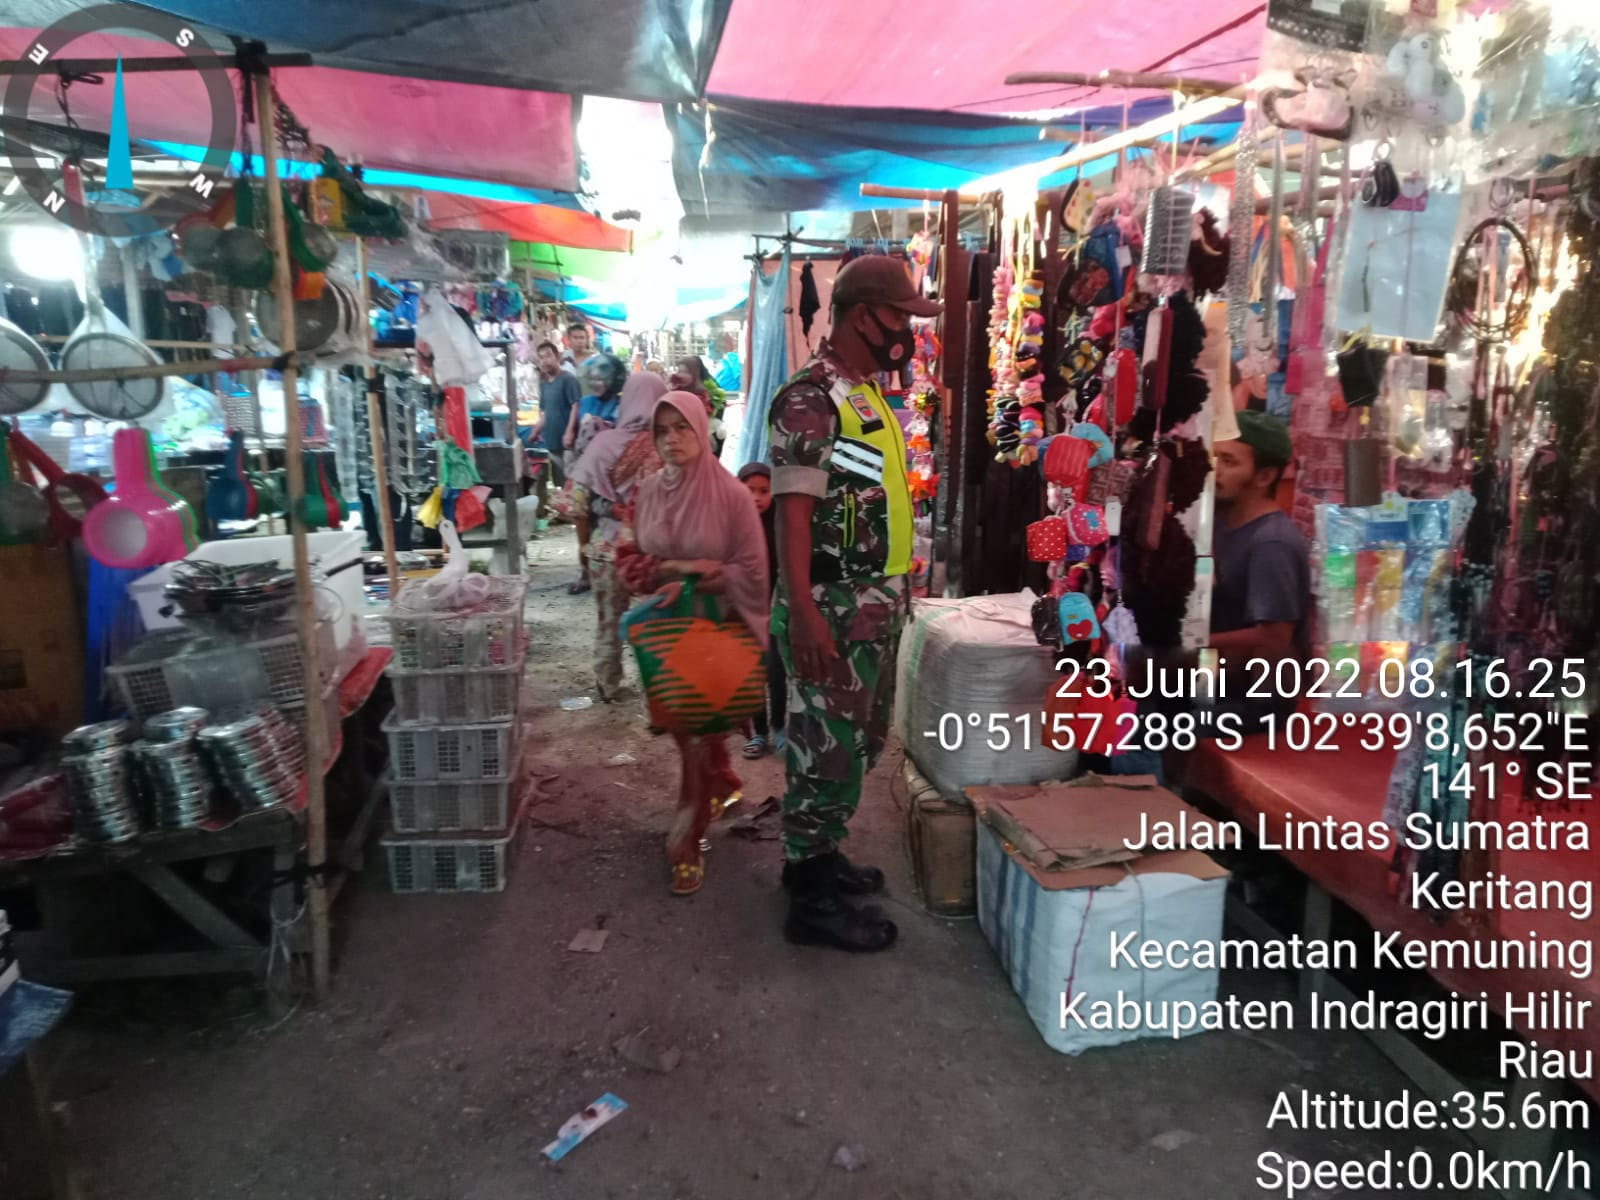 Sosialisasi Penegakan Disiplin di Pasar Pagi Desa Keritang Hulu Oleh Serka M. Ridwan